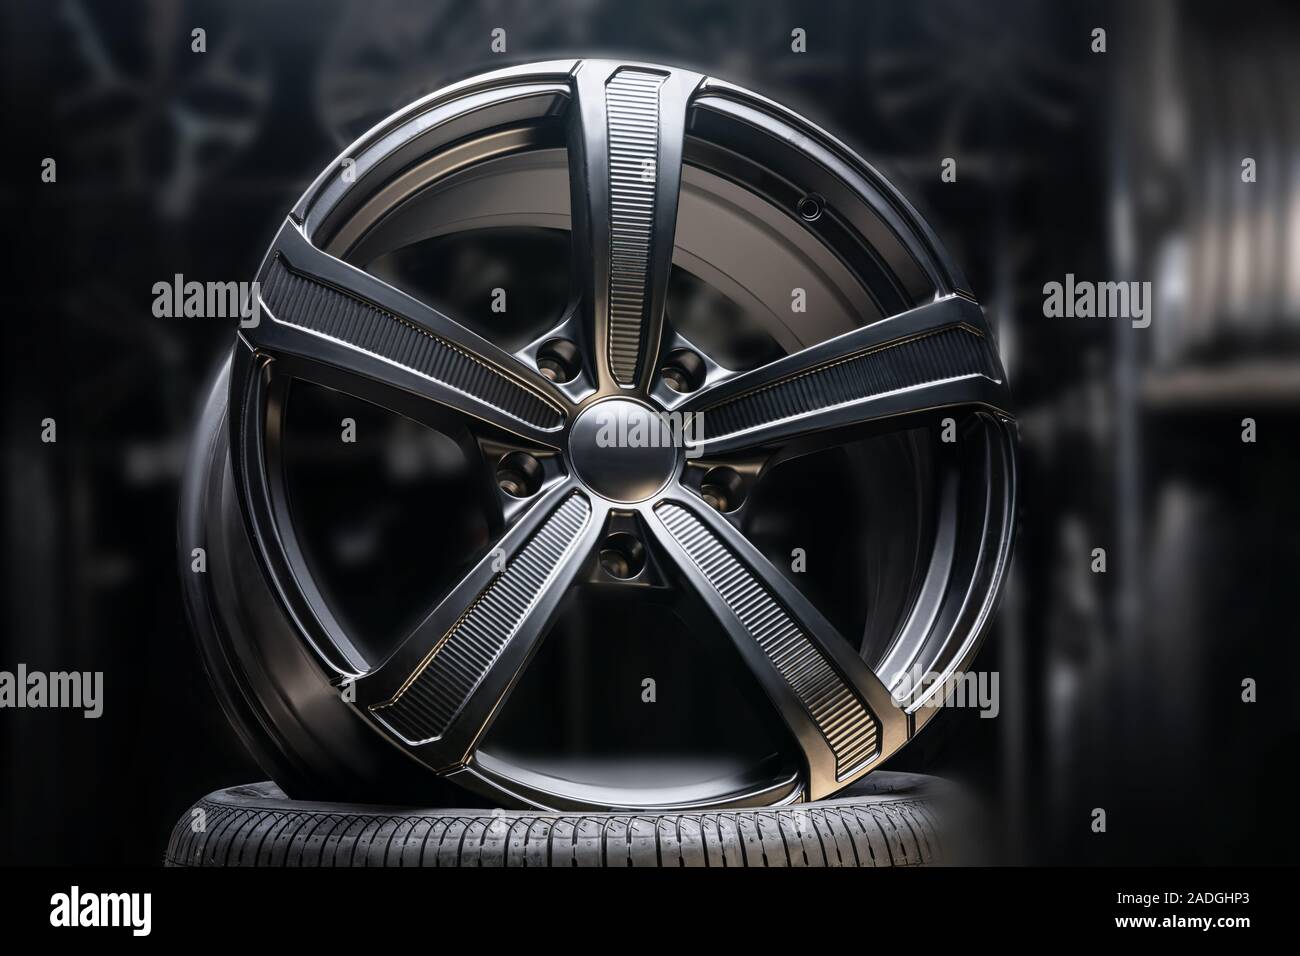 Schöne schwarze Felgen aus Aluminium auf einem dunklen Hintergrund.  exklusive Räder für teure Autos Stockfotografie - Alamy